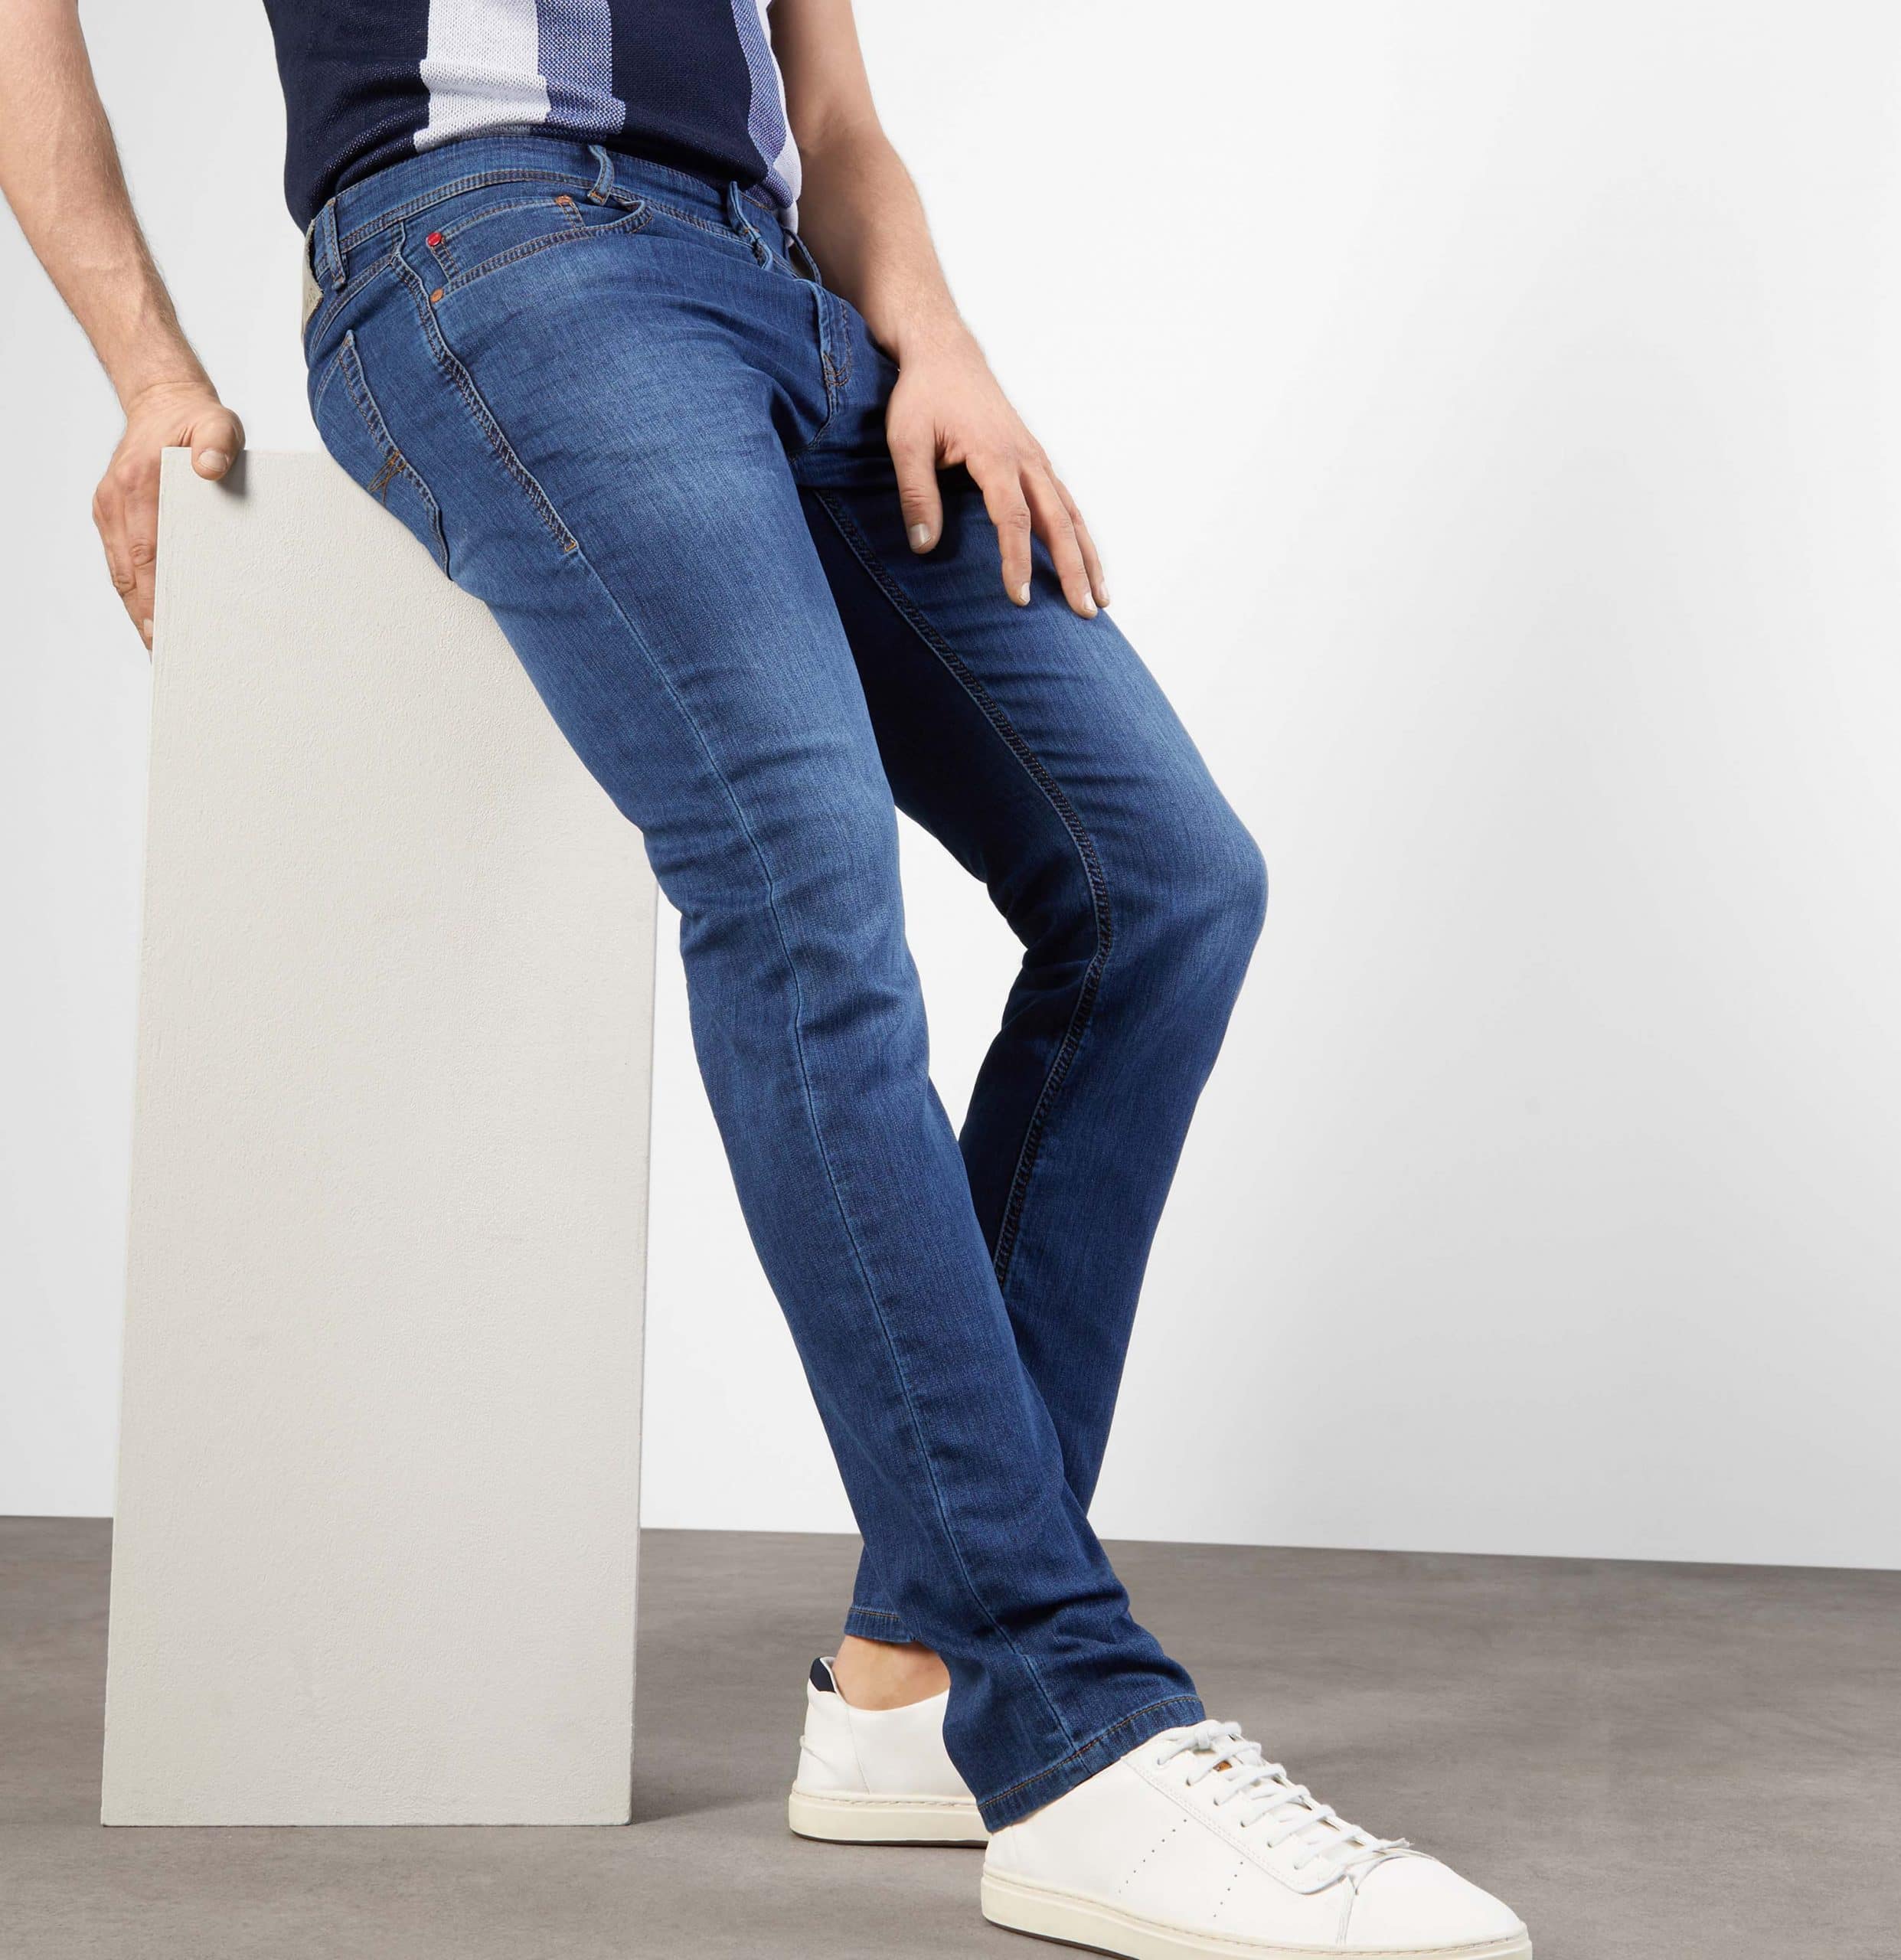 Spectaculair Brandewijn kans Mac Jeans-Jog'n Model - Woodbury Mens Shop